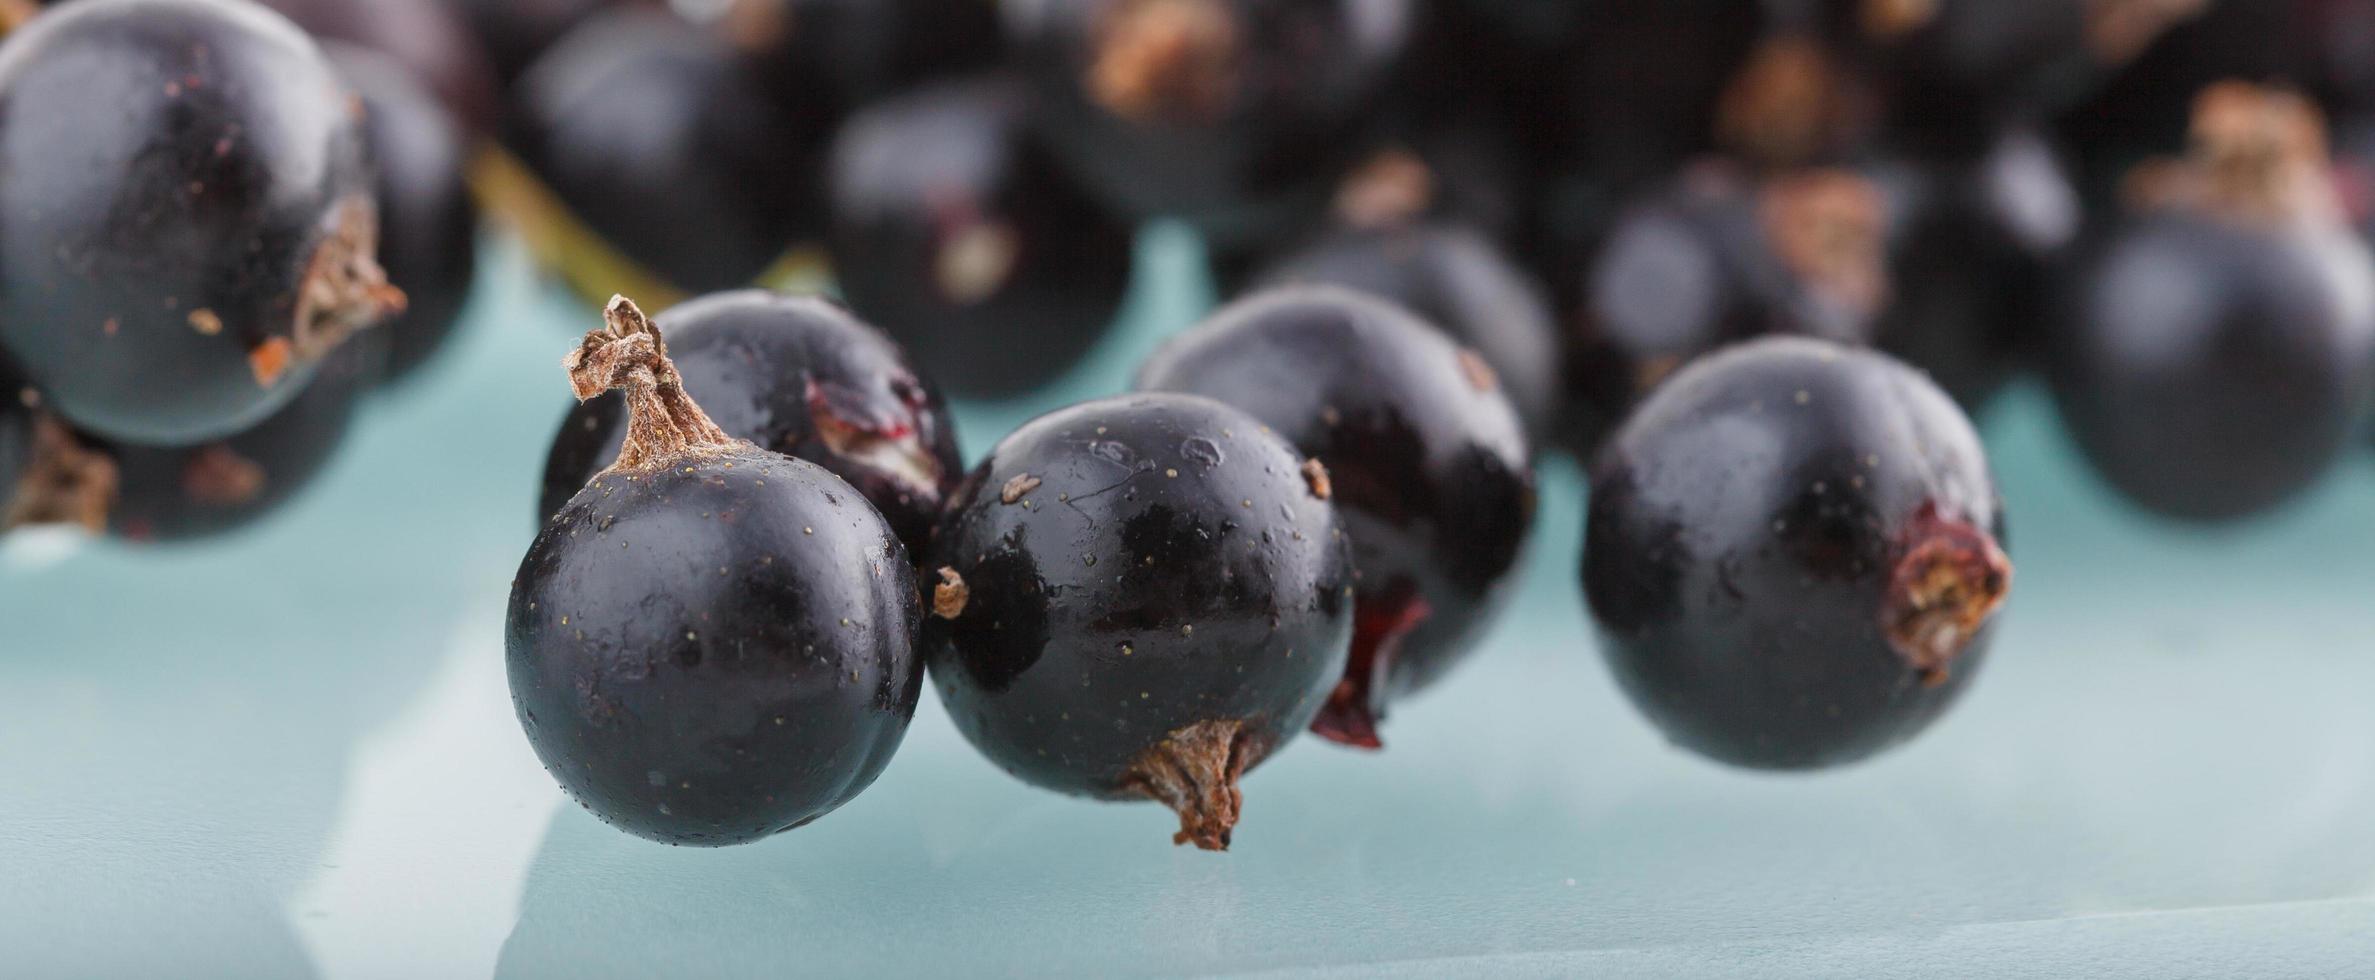 zwarte bes, bessen uit de gezonde biotuin zomersmaak wilde vruchten foto